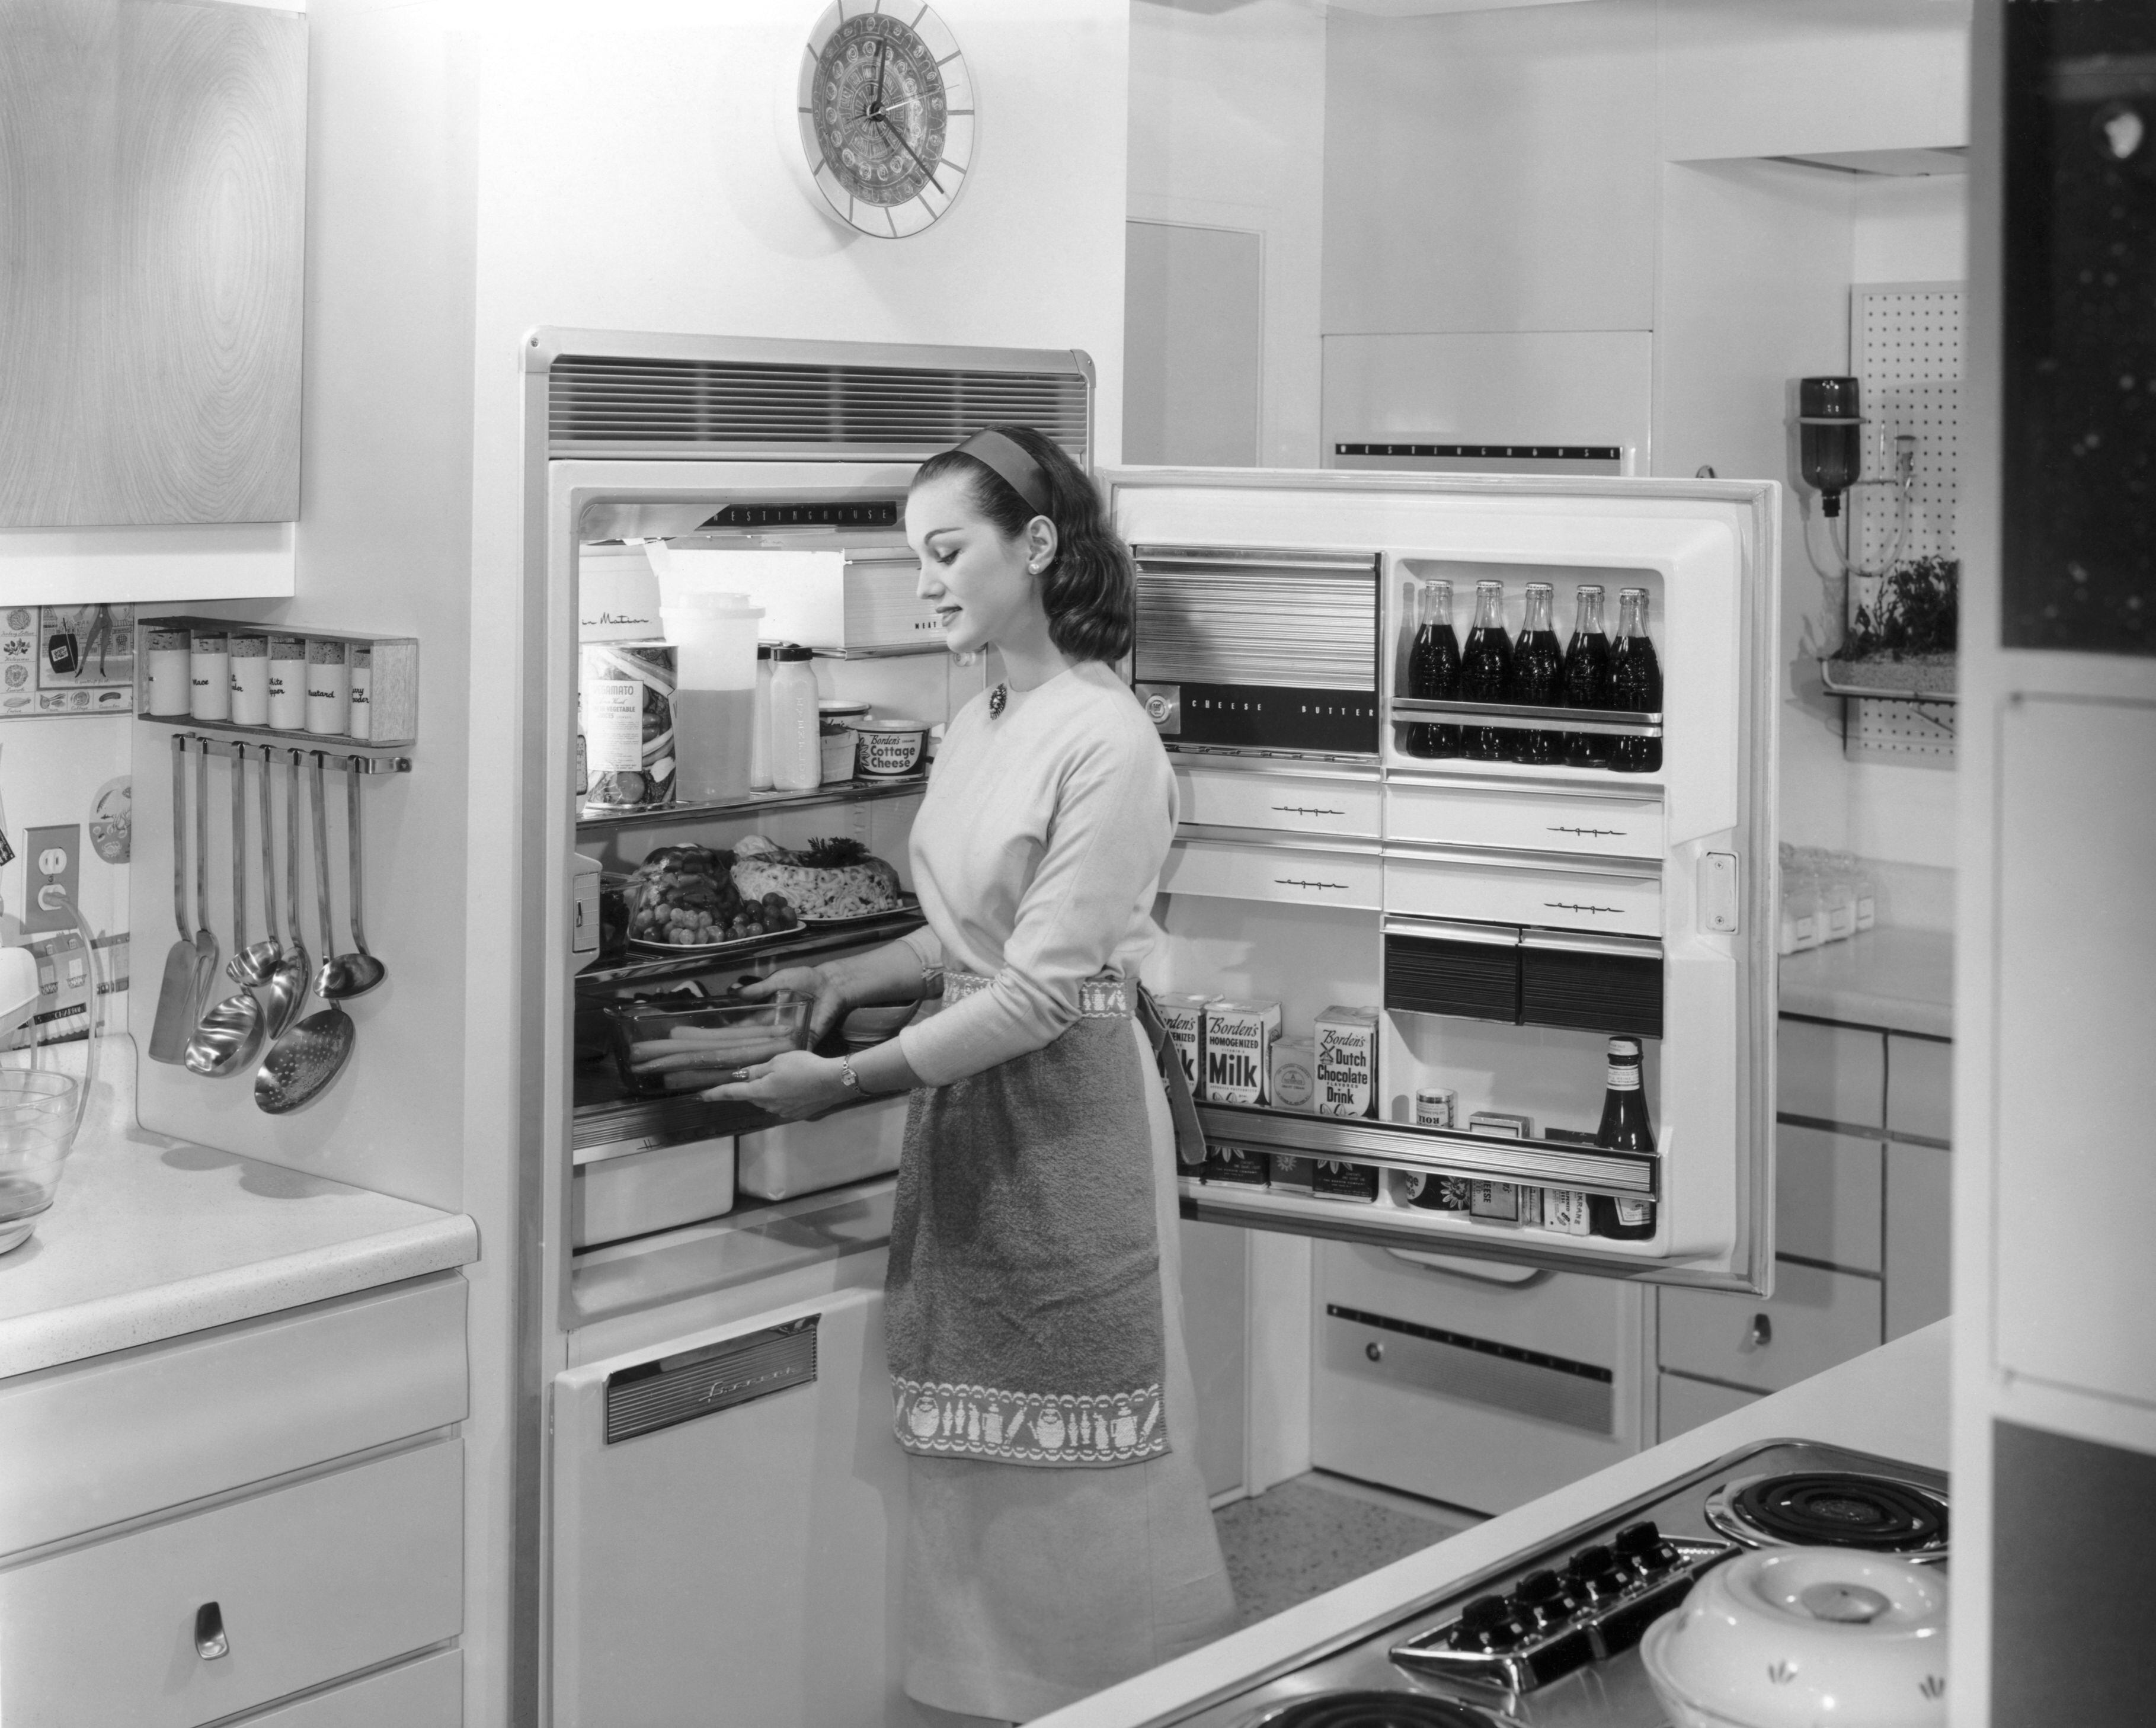 Una mujer coloca la compra en su frigorífico, en los años cincuenta.